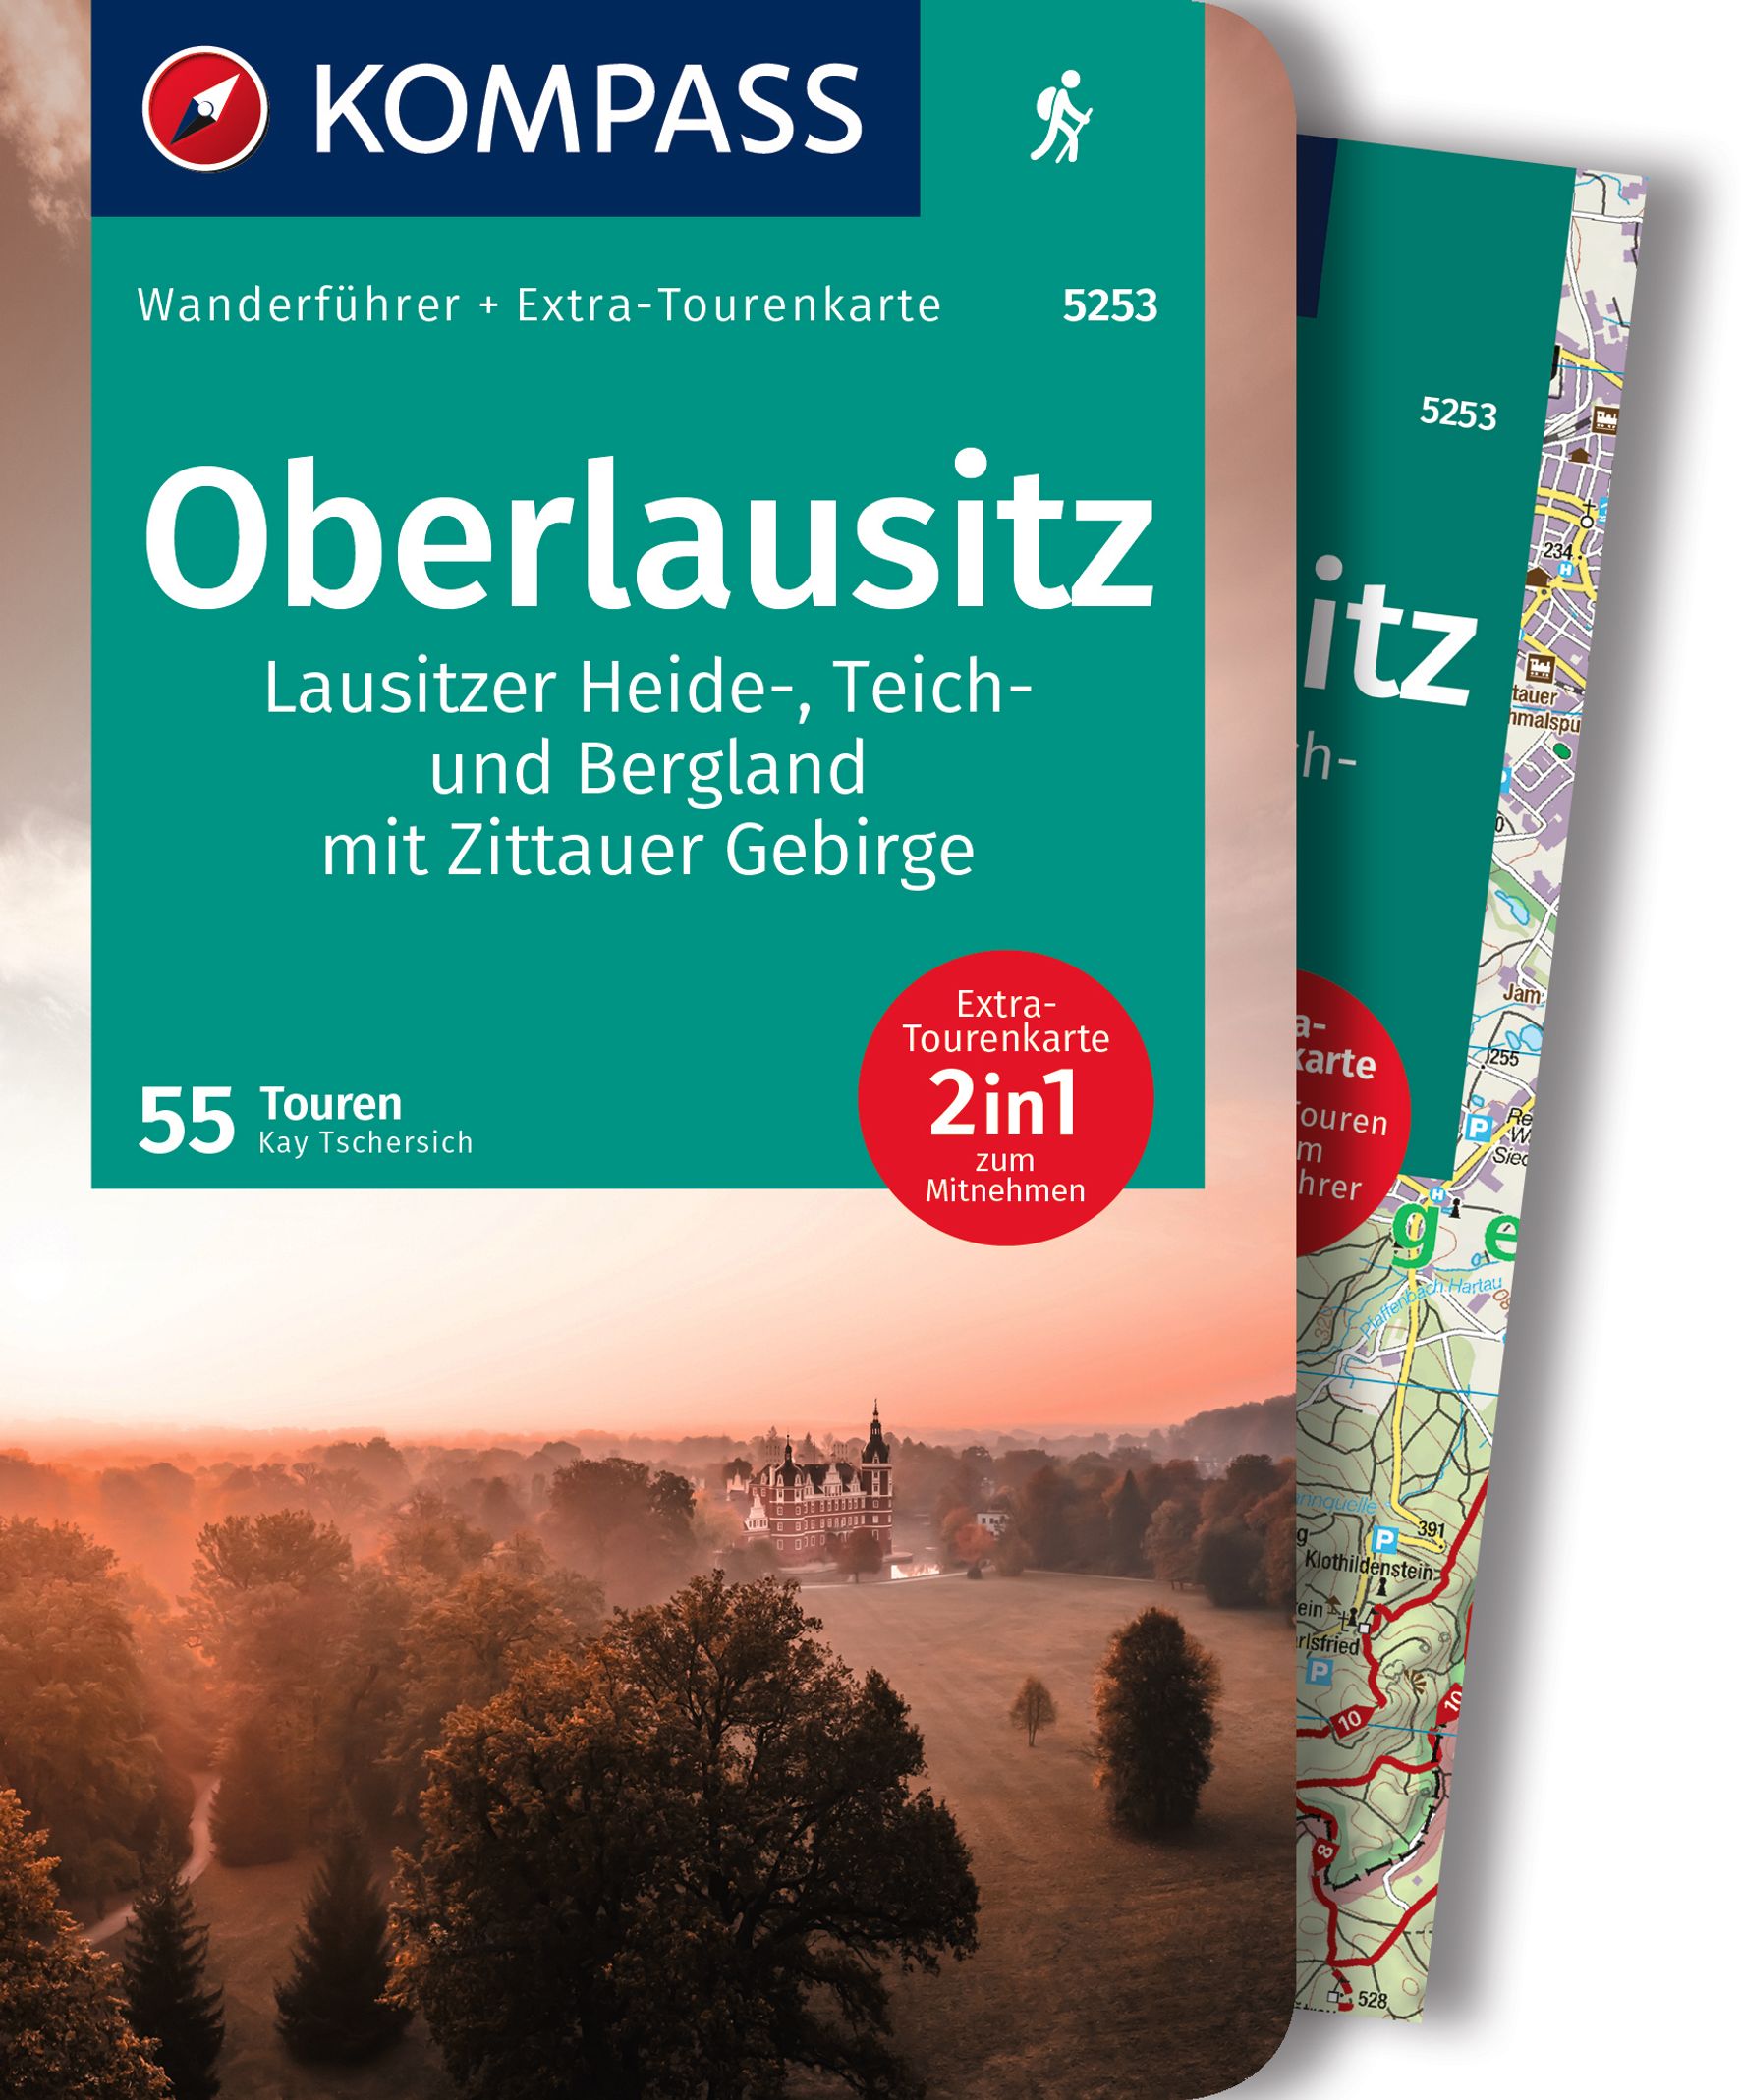 MAIRDUMONT Oberlausitz, Lausitzer Heide-, Teich- und Bergland, mit Zittauer Gebirge, 55 Touren mit Extra-Tourenkarte